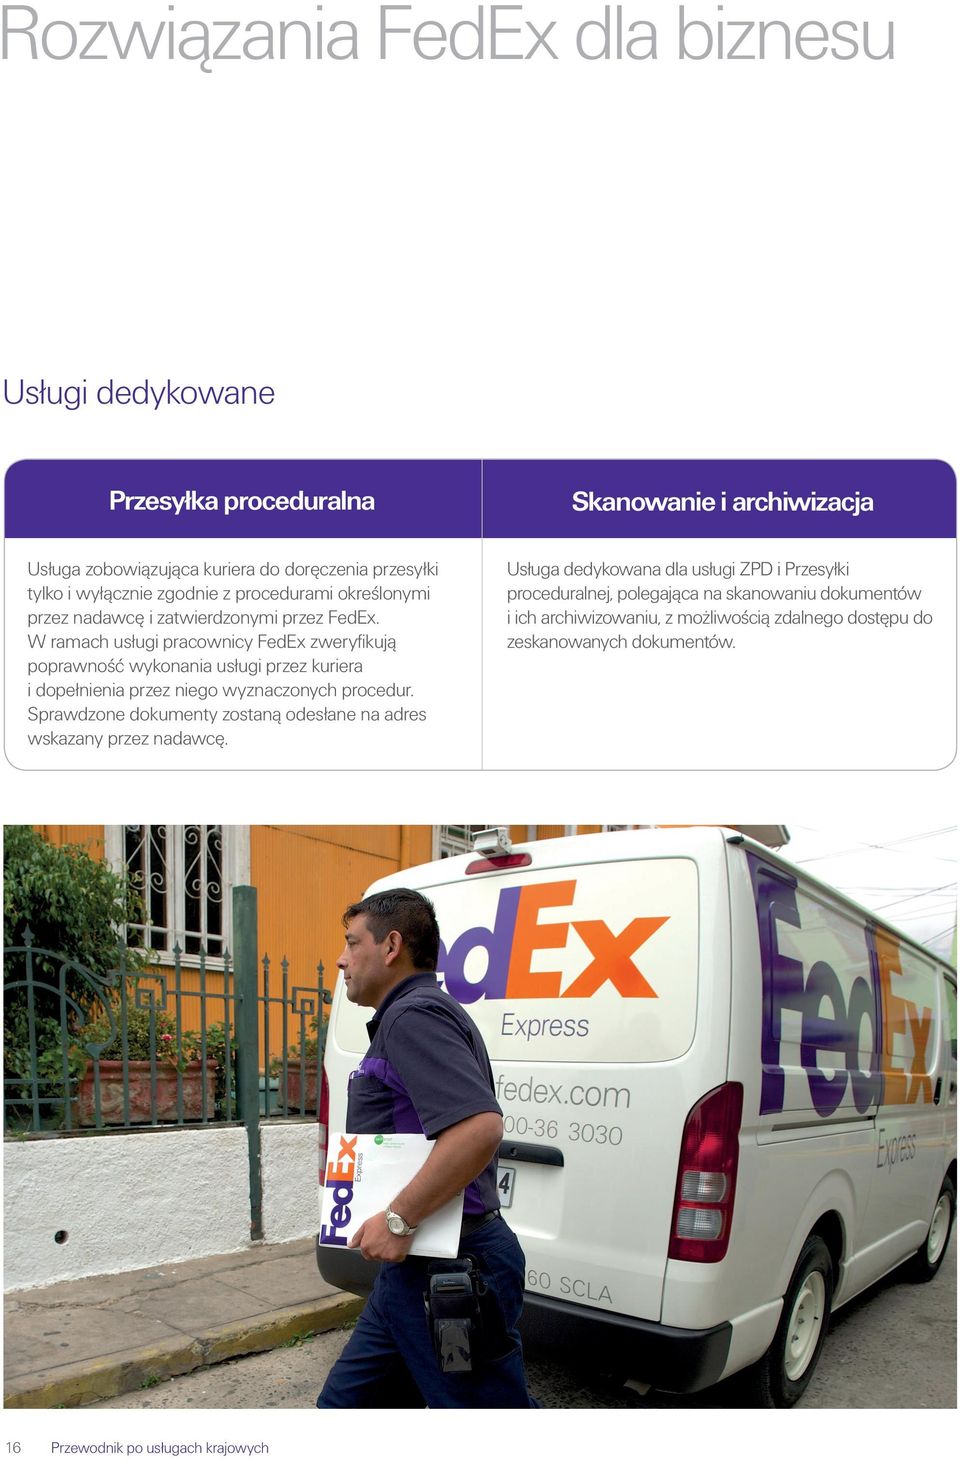 W ramach usługi pracownicy FedEx zweryfikują poprawność wykonania usługi przez kuriera i dopełnienia przez niego wyznaczonych procedur.